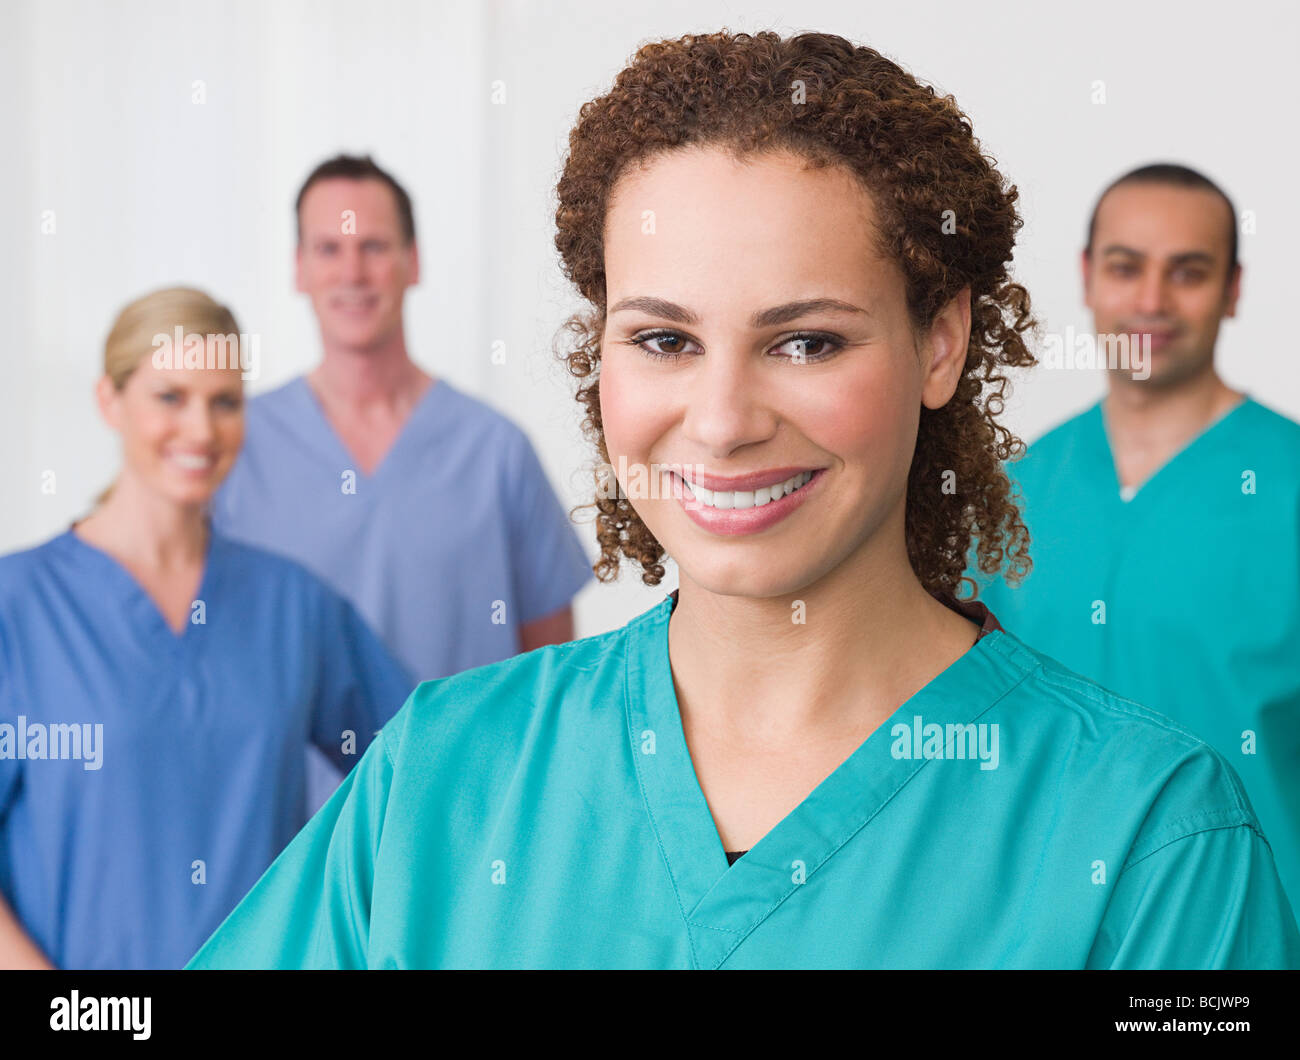 Four nurses Stock Photo